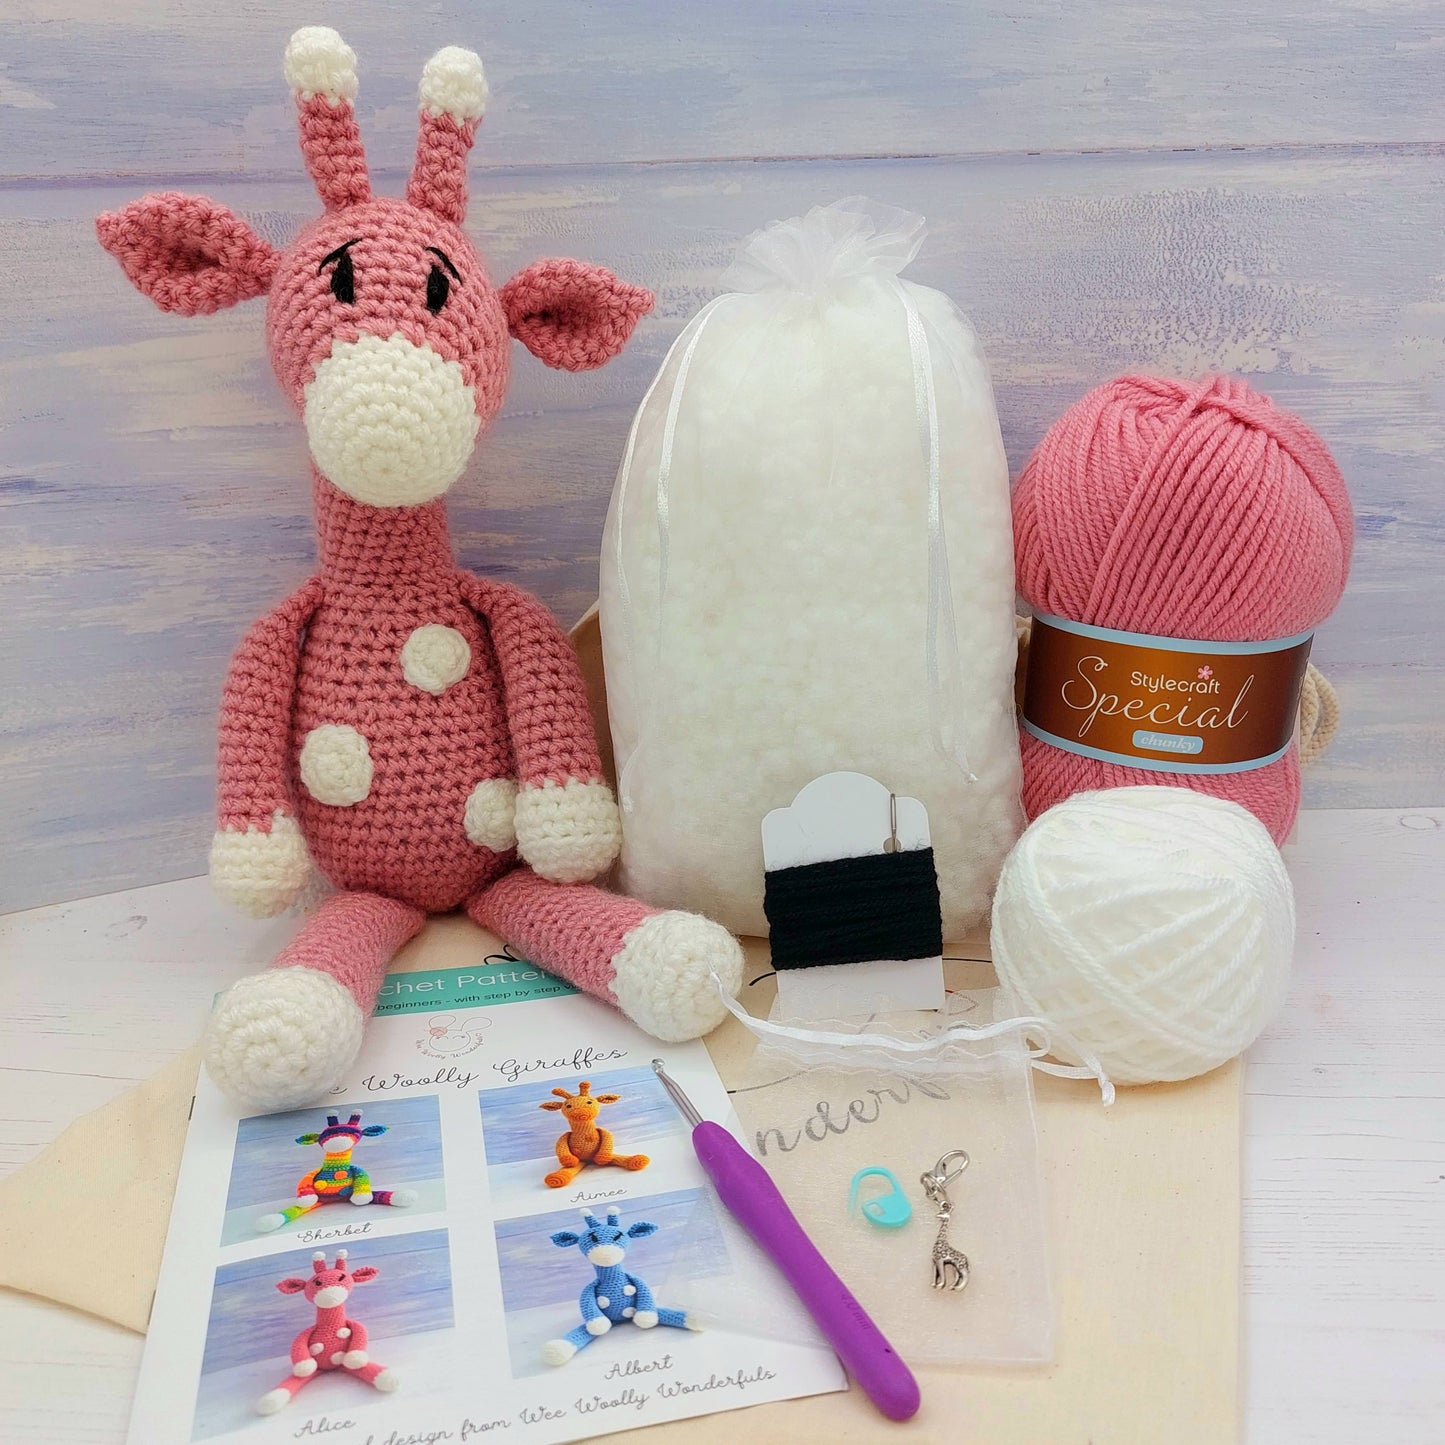 Giraffe Crochet Kit - Complete Beginner Kit with Video Tutorials